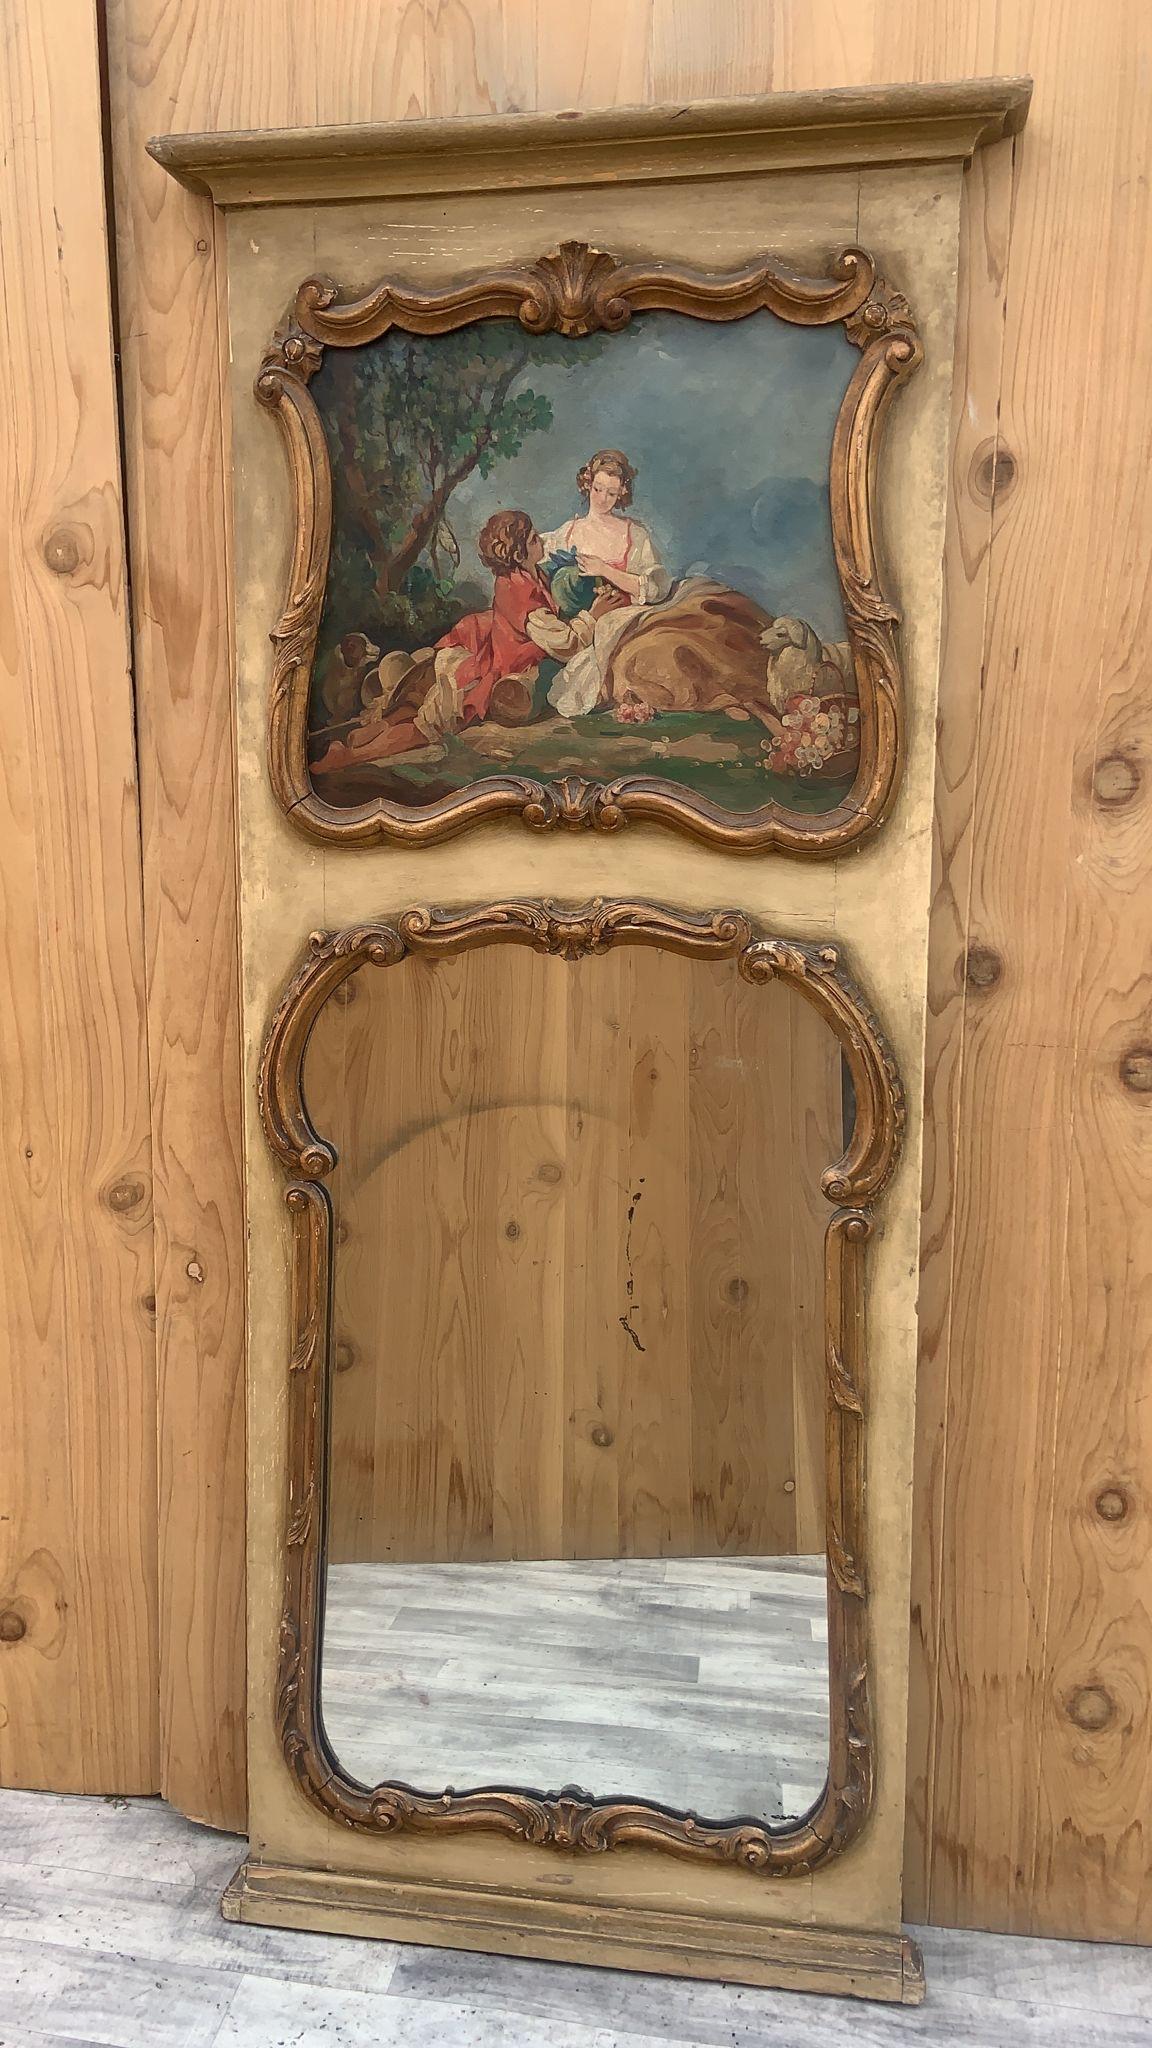 Miroir de colis Trumeau doré ancien avec toile peinte 

Ce magnifique miroir mural/manteau de la fin des années 1800 est orné d'une peinture à l'huile représentant une scène romantique de pique-nique à flanc de colline. Magnifique pièce ancienne